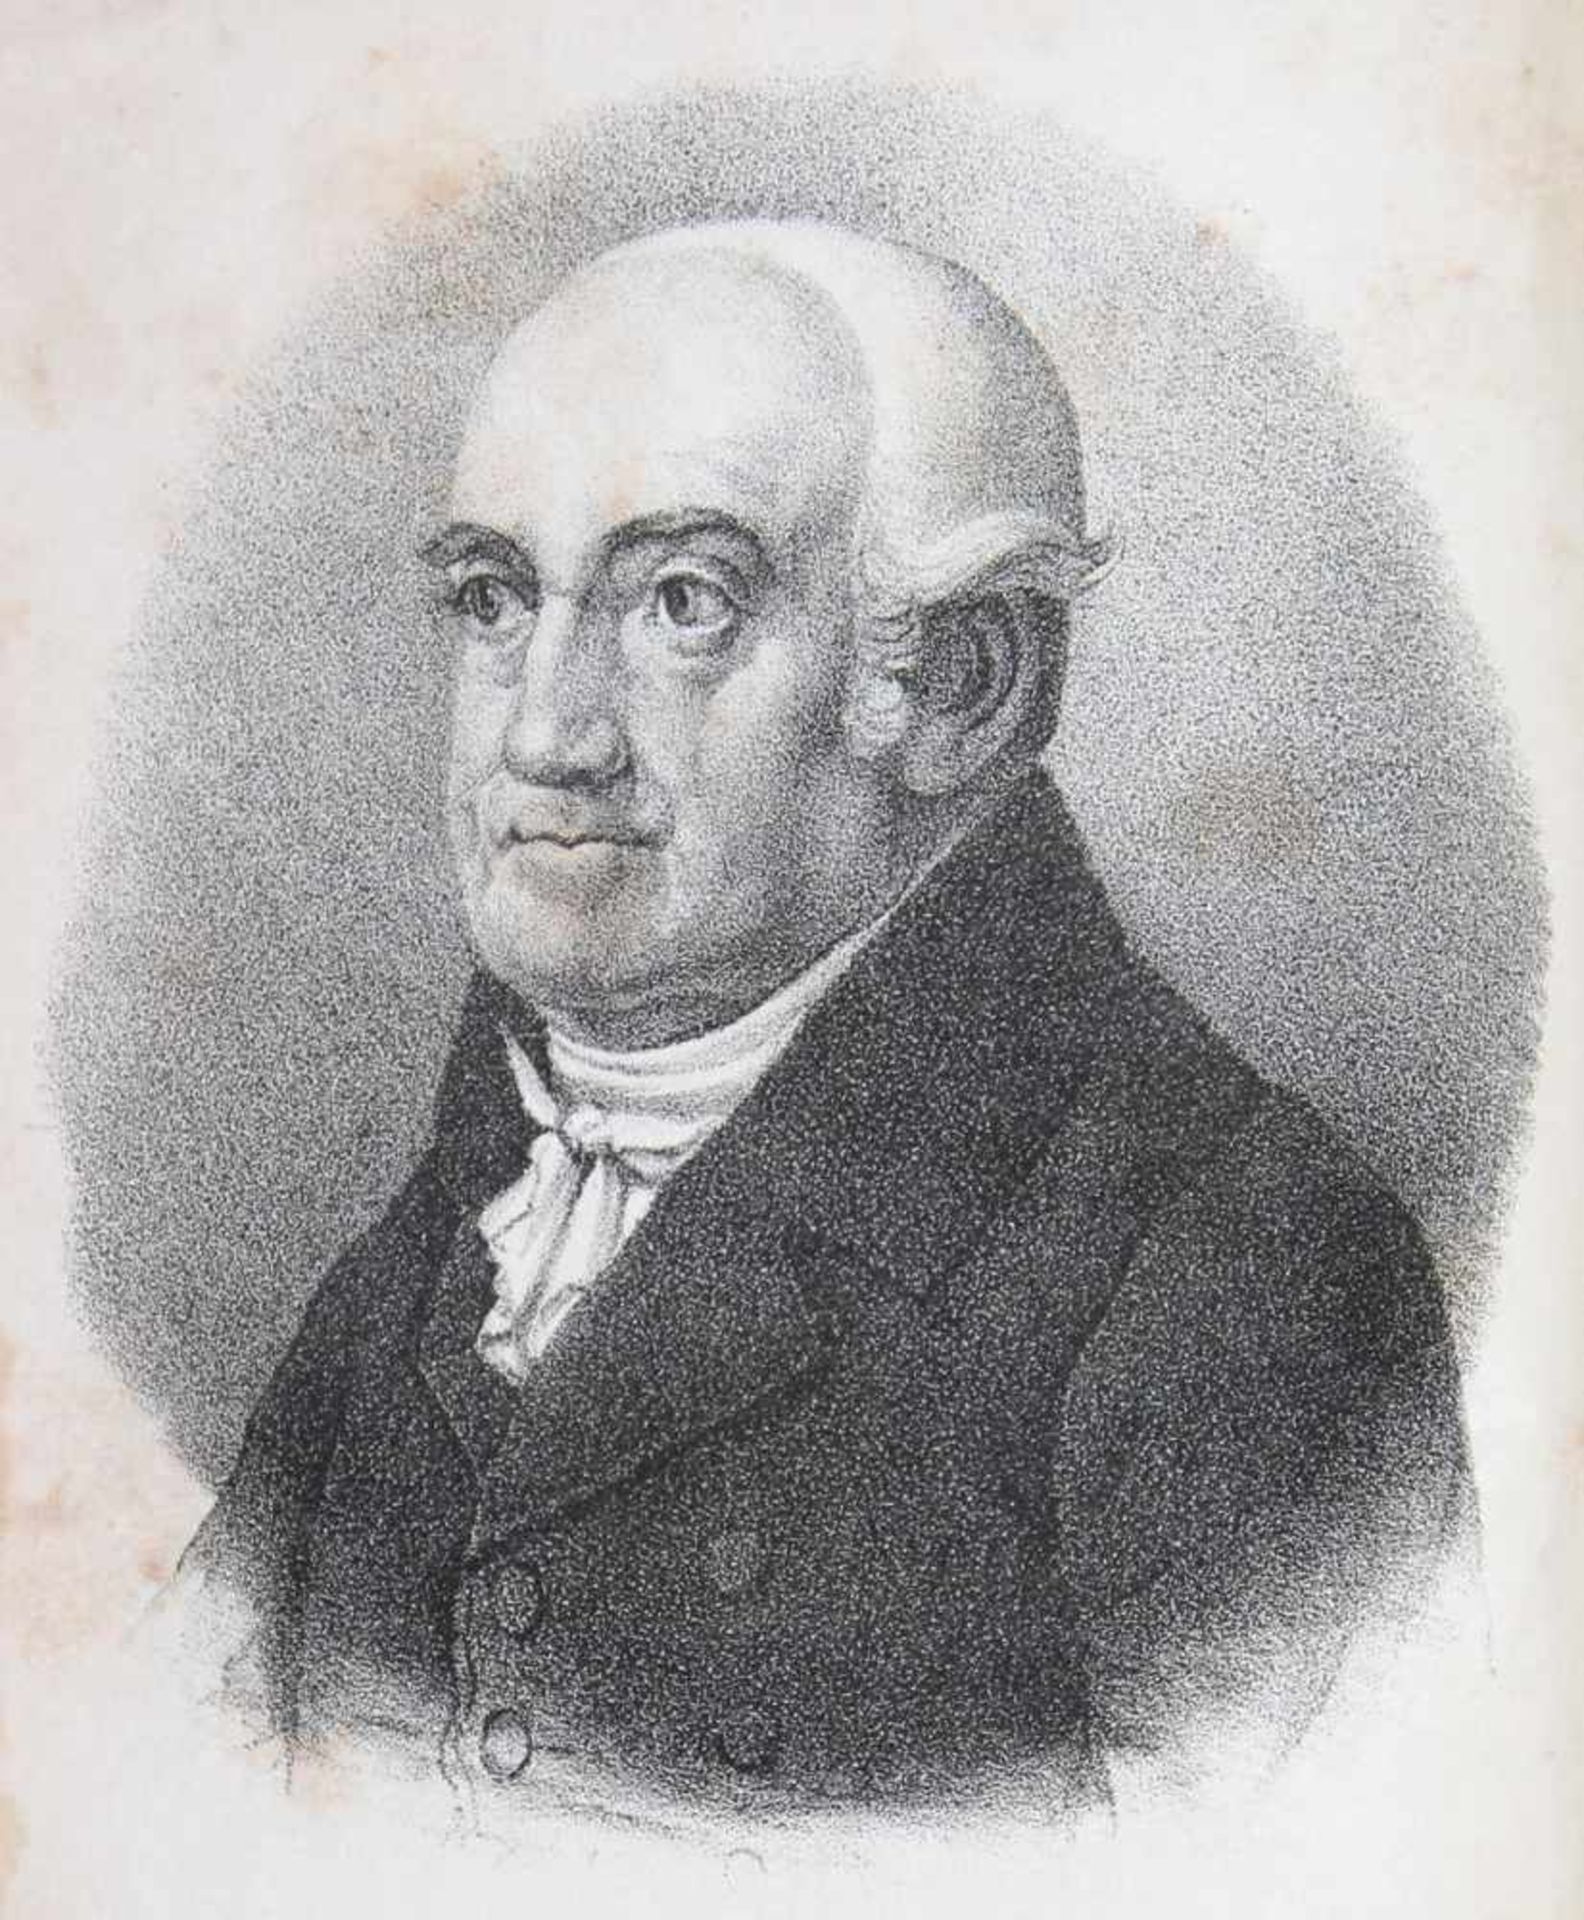 Sachs,J.J.Medicinischer Almanach für das Jahr 1838. Jg. 3. Bln., Heymann 1838. Mit lithogr.